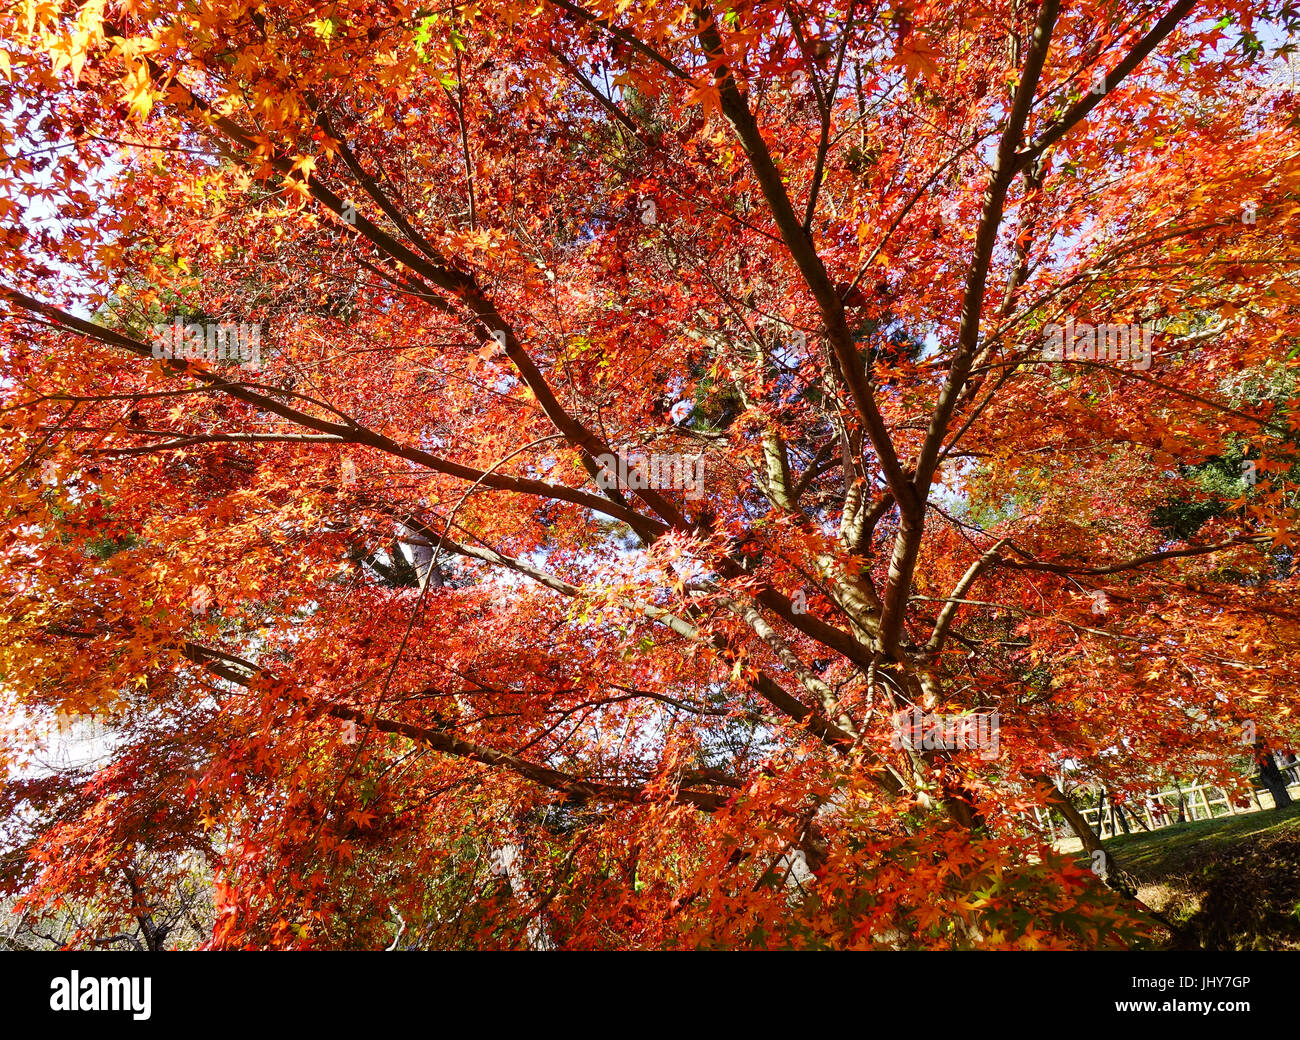 Les arbres d'érable rouge à la journée ensoleillée dans le parc de Nara, au Japon. Nara a été la capitale du Japon de 710 à 794, prêtant son nom à la période Nara. Banque D'Images